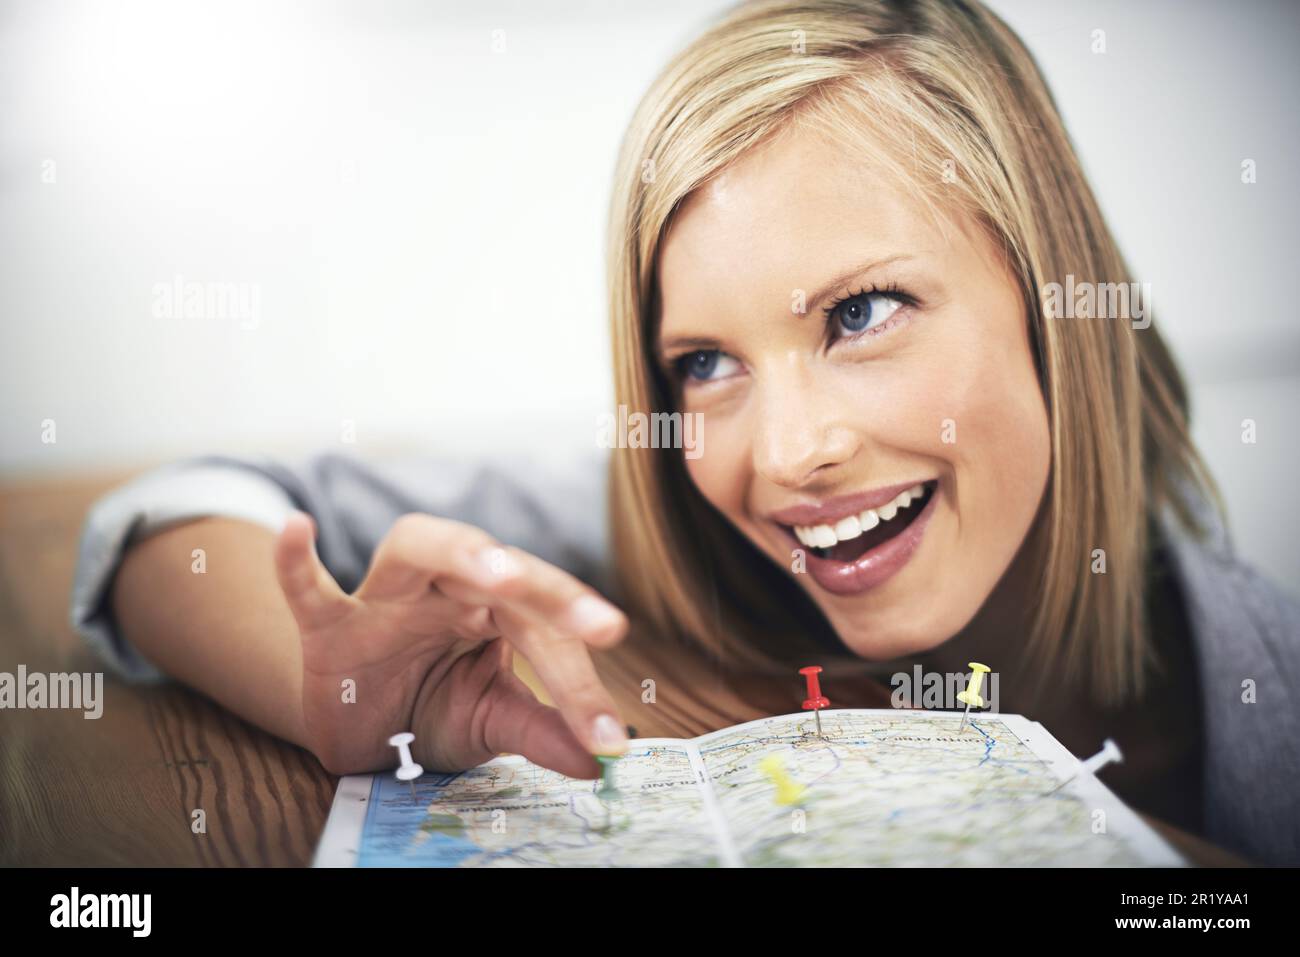 Pin mappa, faccia e donna felice, consulente di viaggio o dipendente entusiasta pianificazione vacanza posizione. Agente di turismo, servizio di agenzia di viaggi e sorriso di persona Foto Stock